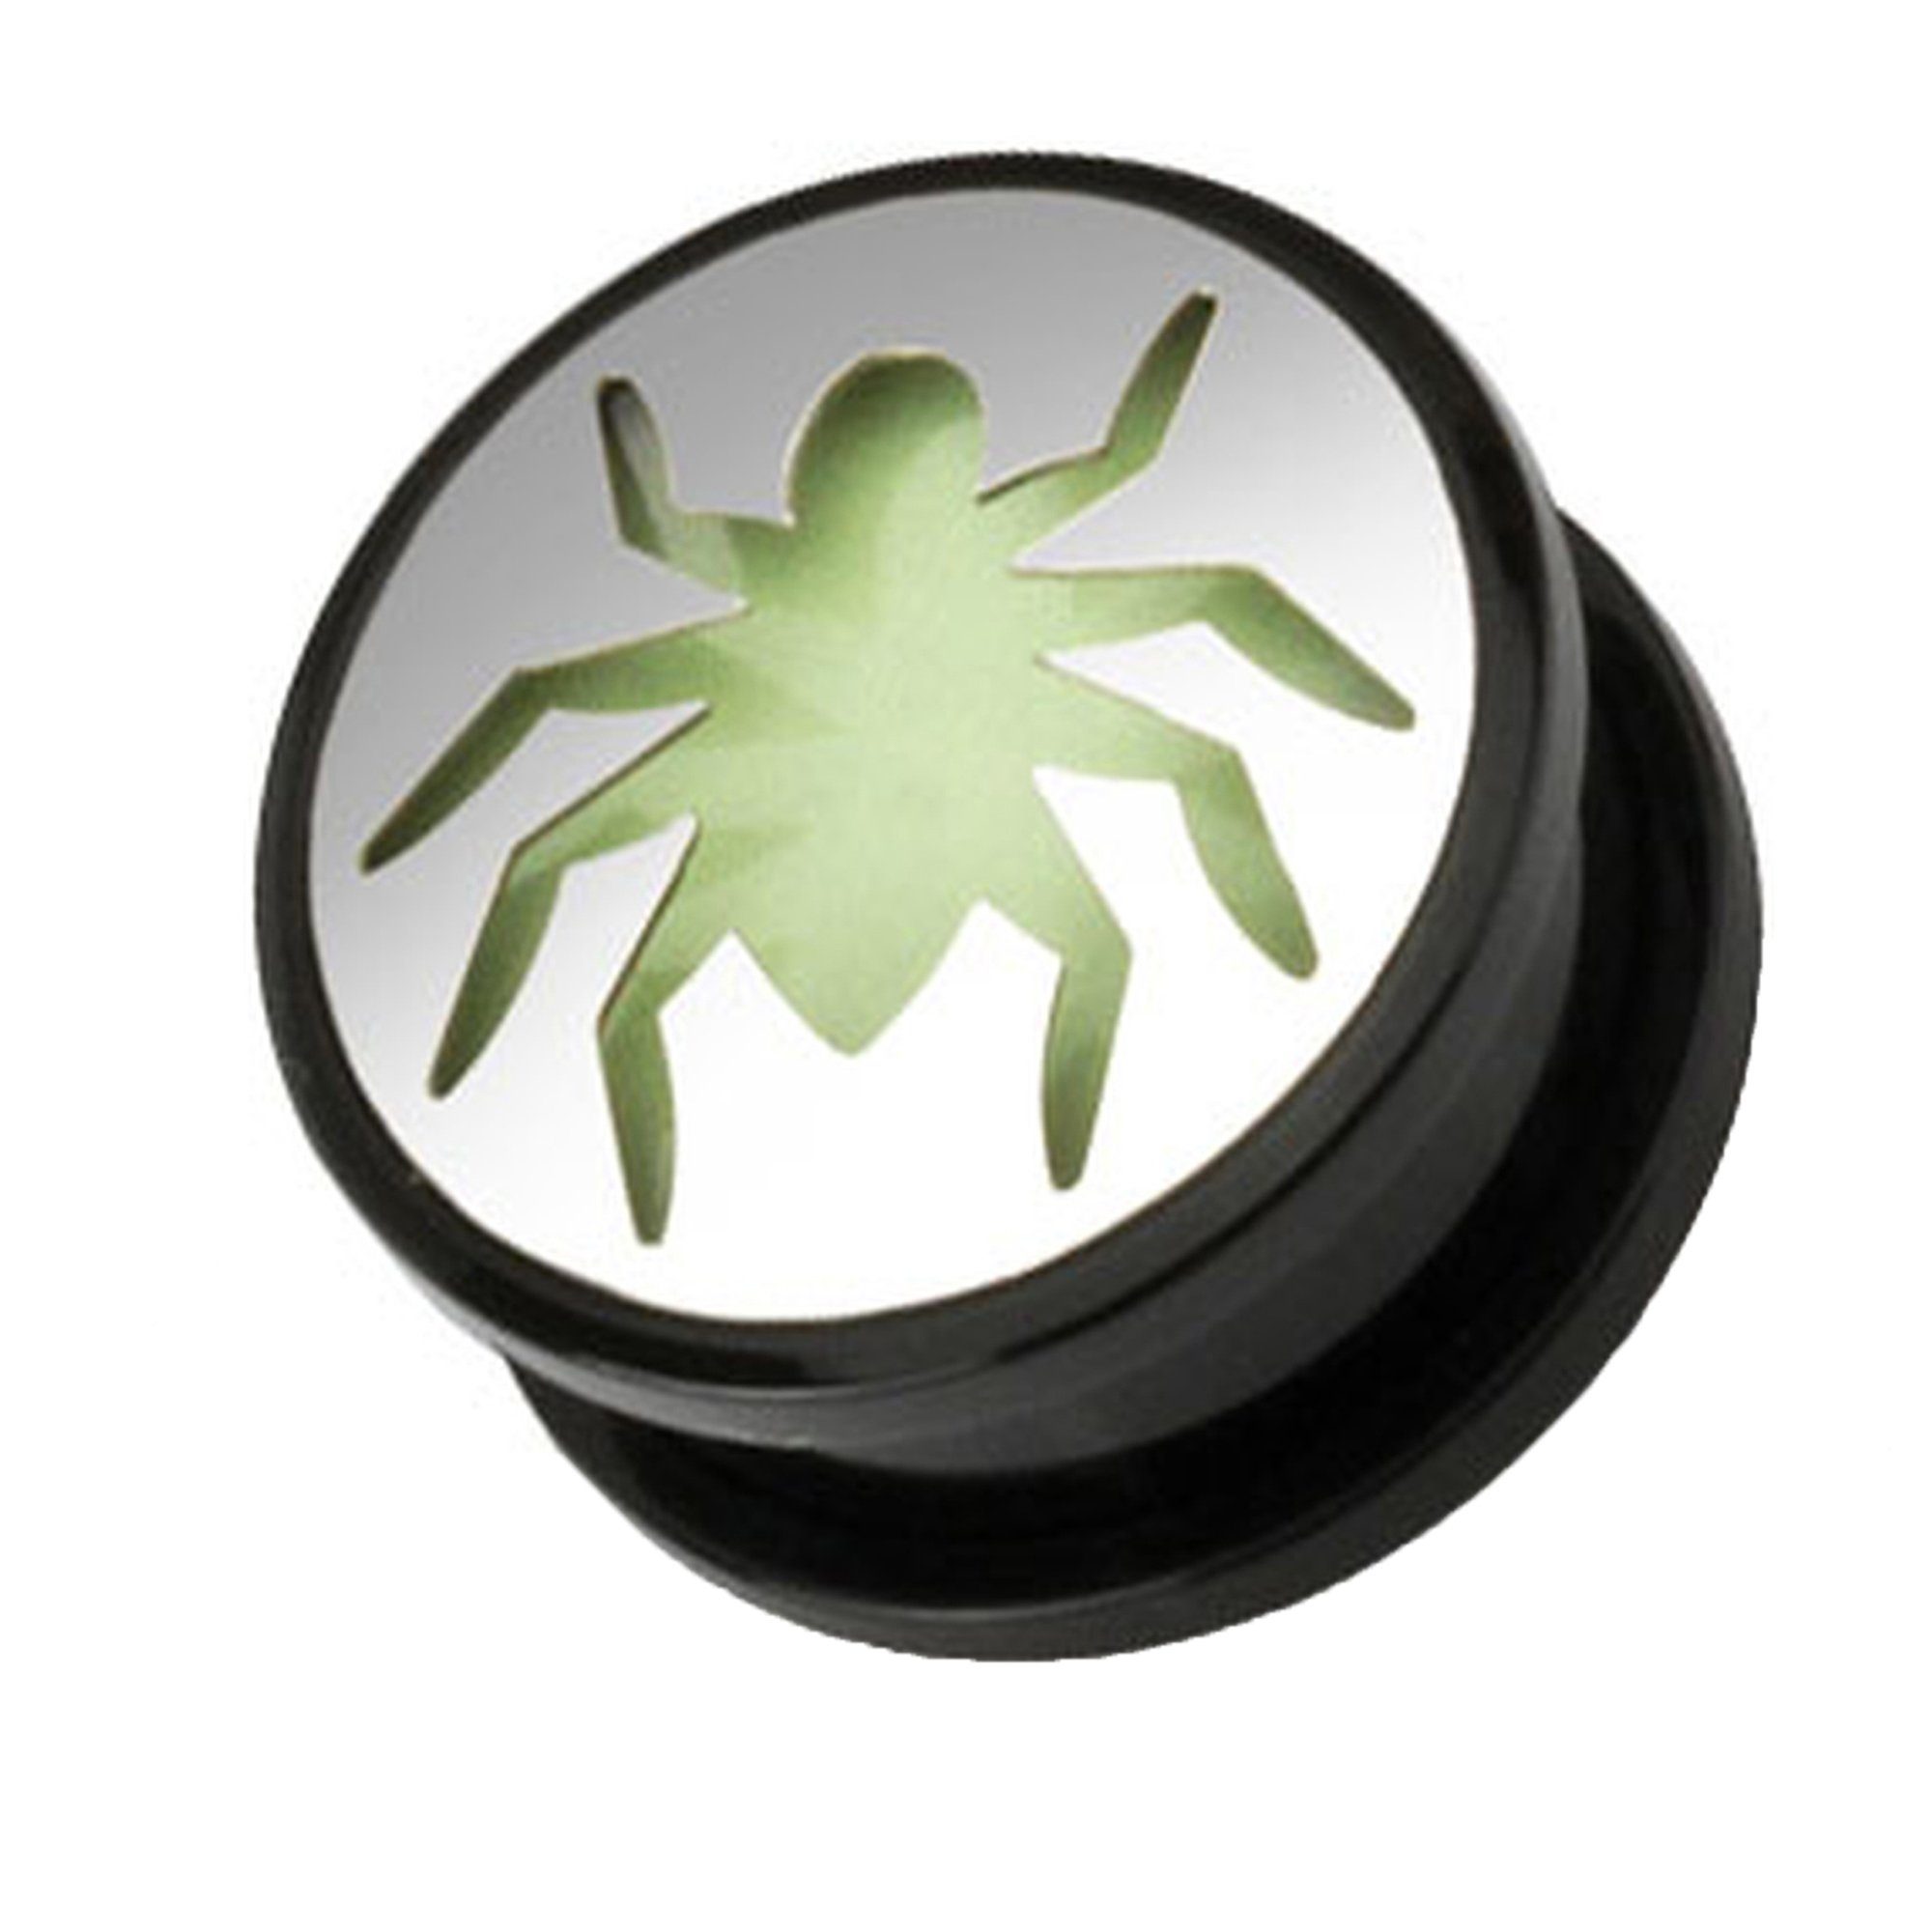 Kunststoff Taffstyle Plug Ohr Dark Spinne Spider Glow Schraubverschluß Ohrpiercing Piercing Schraub Tunnel Dark, Plug Glow Motiv Flesh